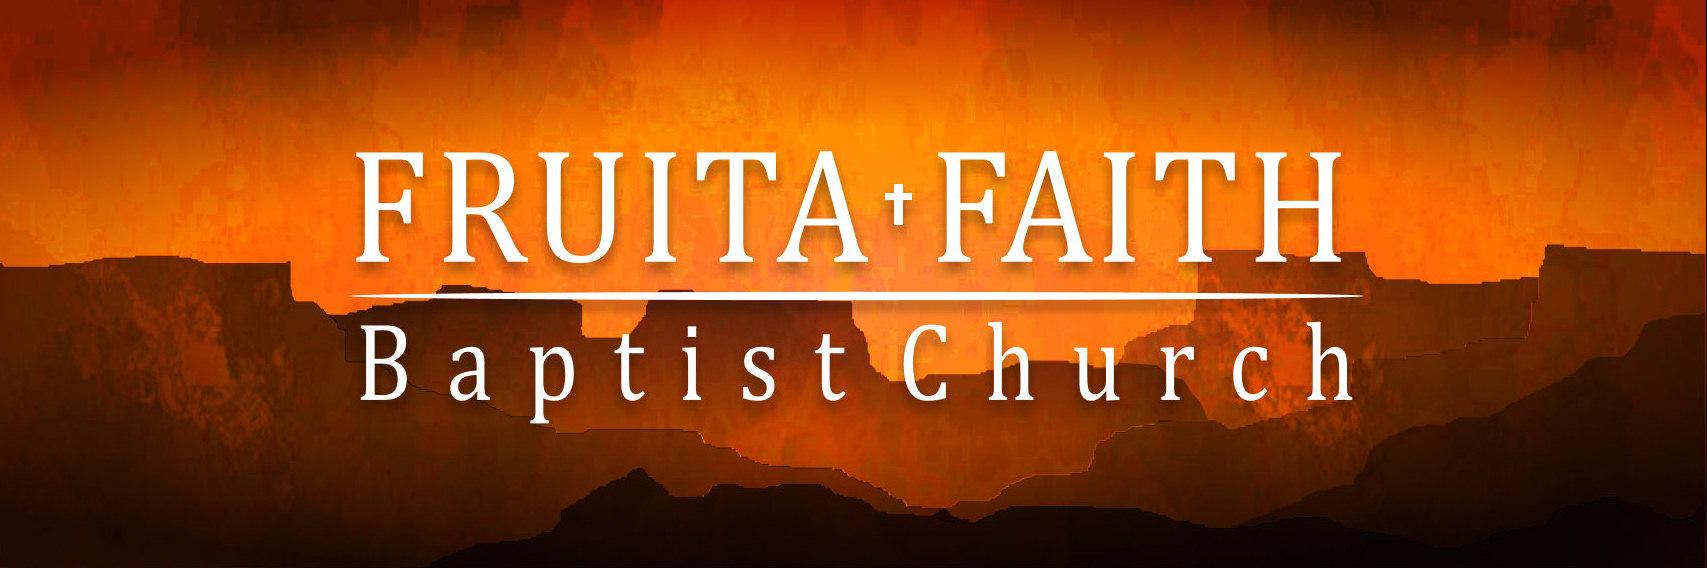 Our Ministry Fruita Faith Baptist Church